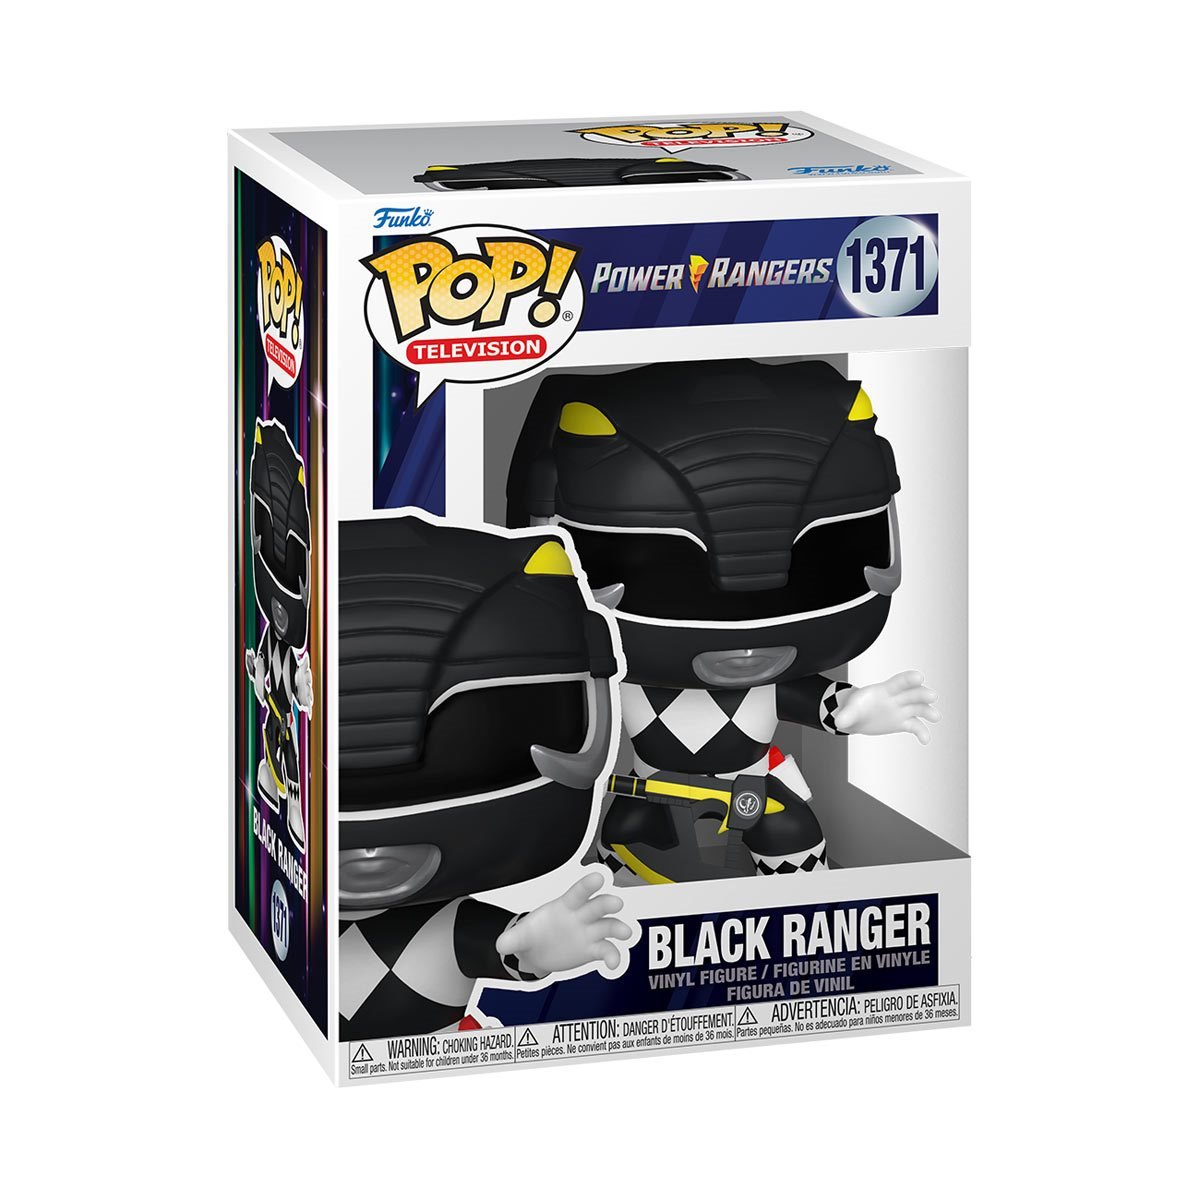 POP! TV Power Rangers Black Ranger #1371